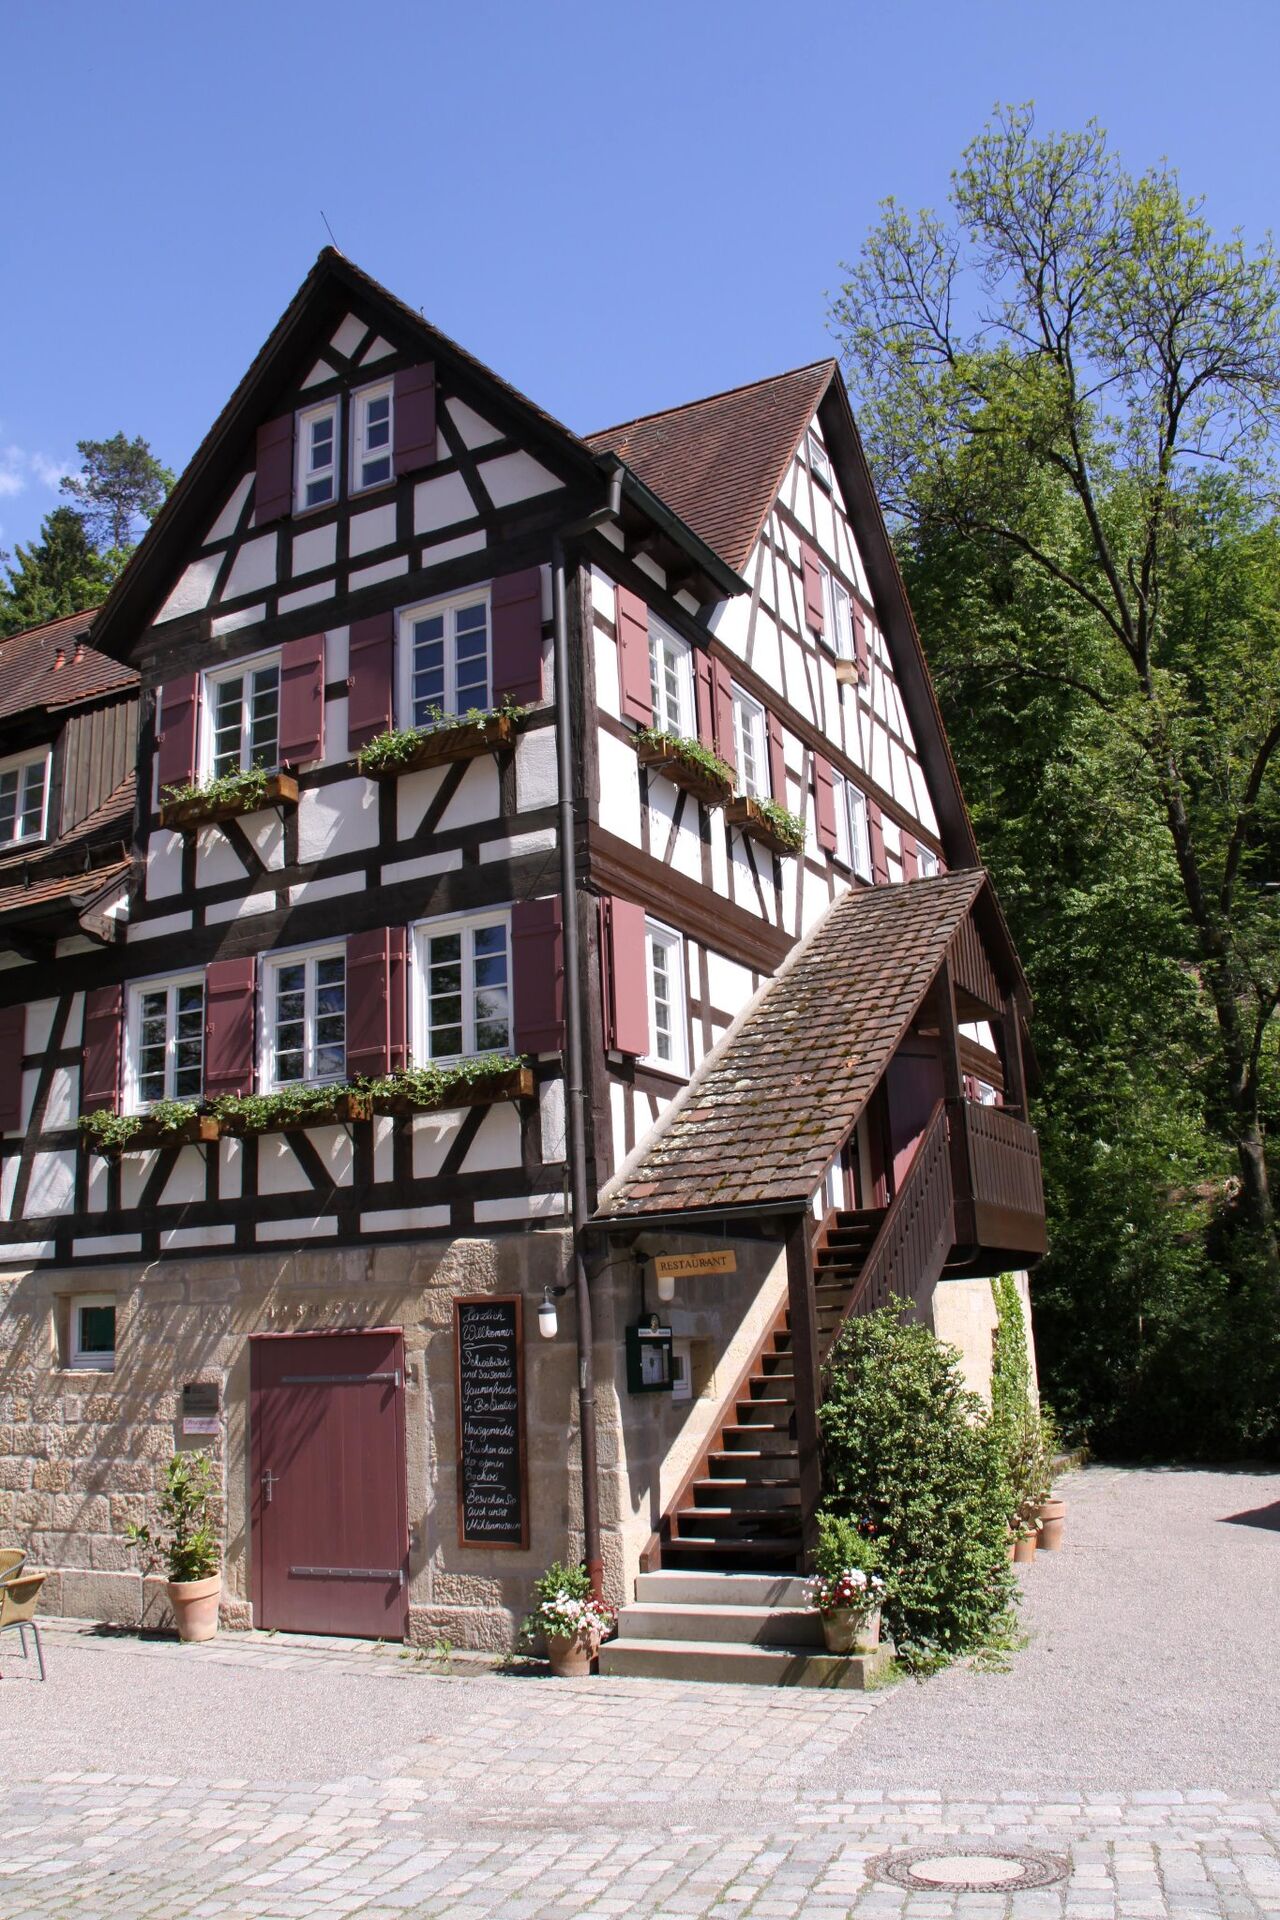 A photo of Mäulesmühle